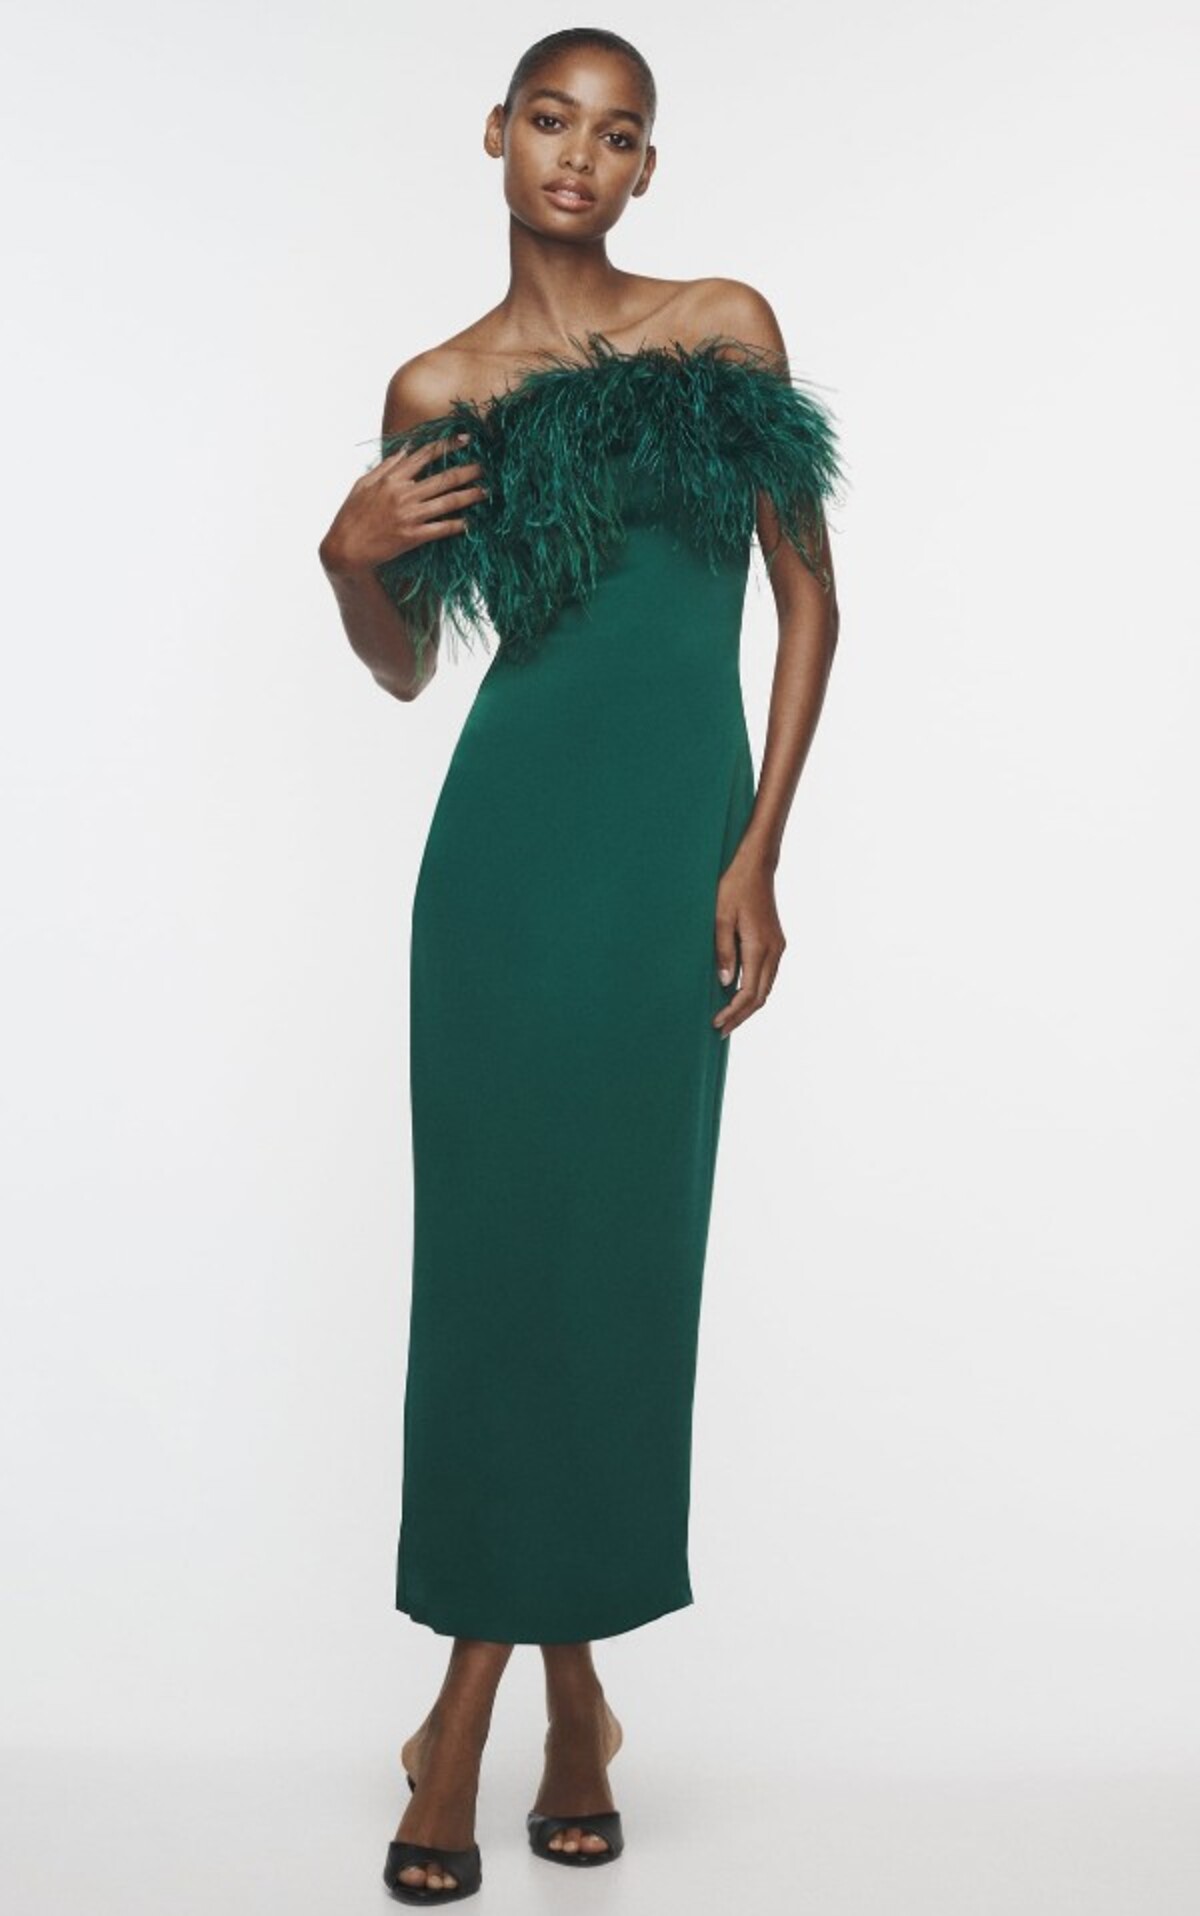 Luxusné priliehavé šaty s pierkami ti v smaragdovom prevetení ponúka značka Zara. Zaplatíš za ne 99,95 eur.